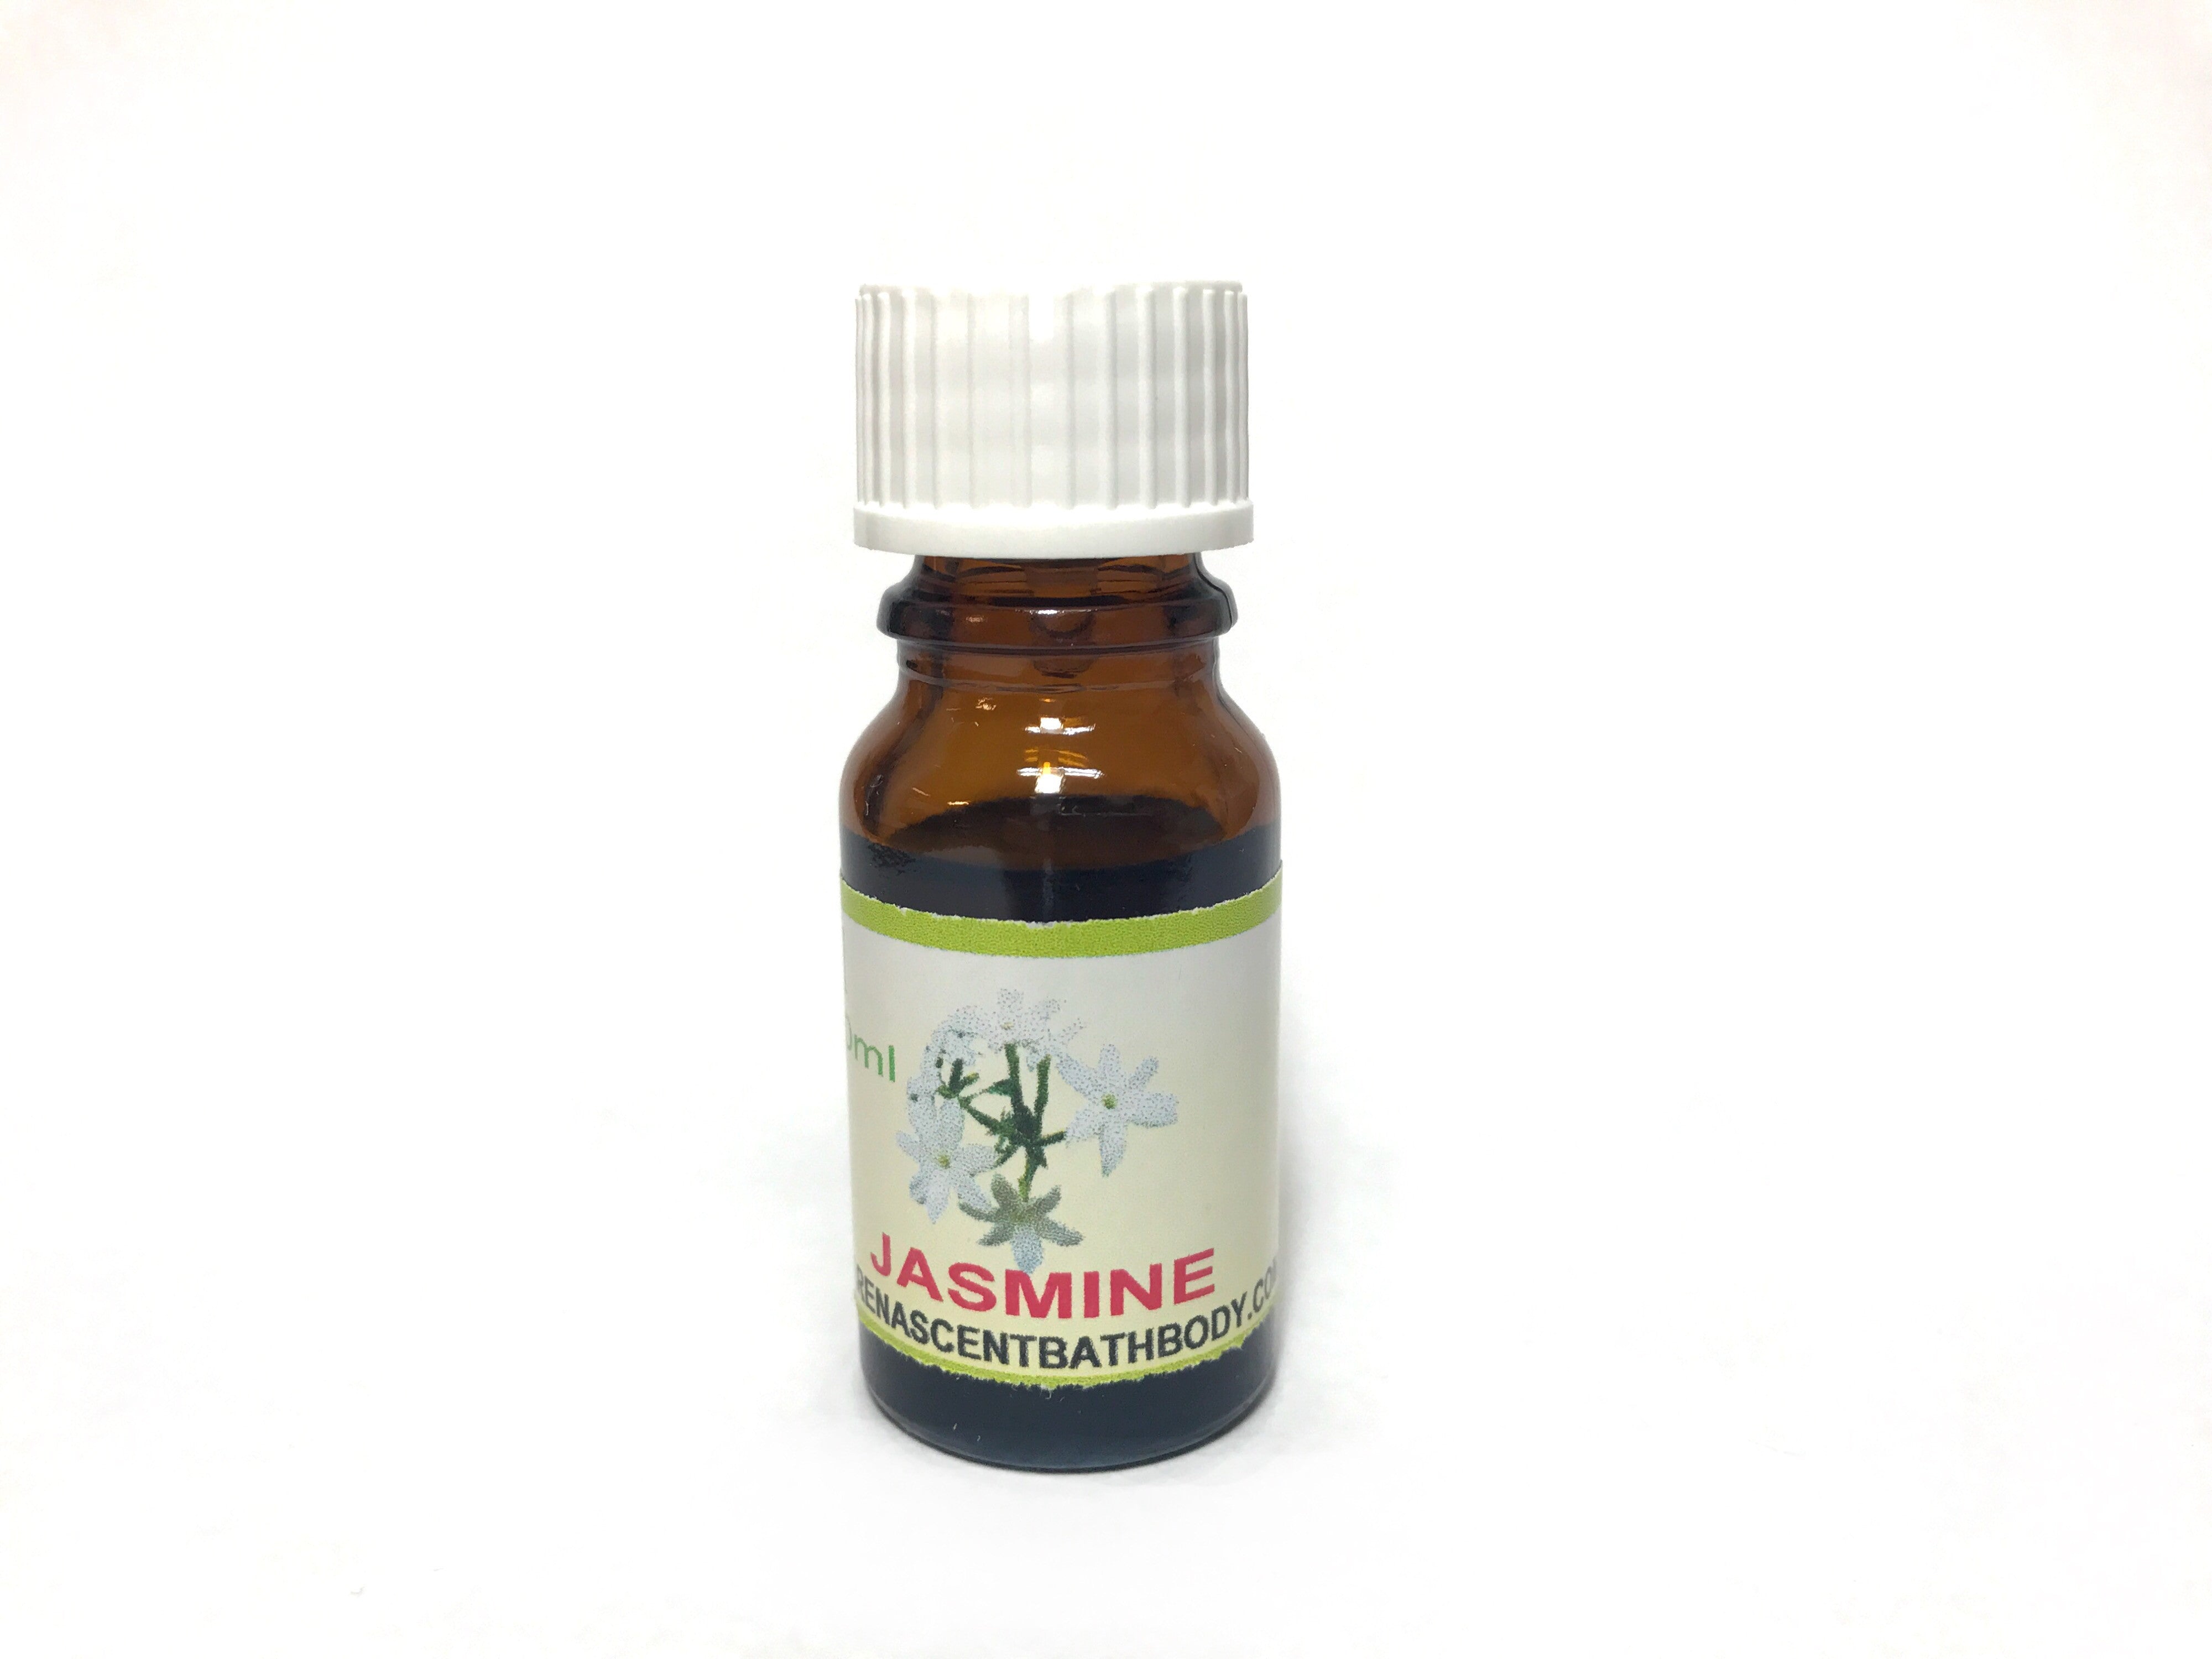 Jasmine Fragrant Oil